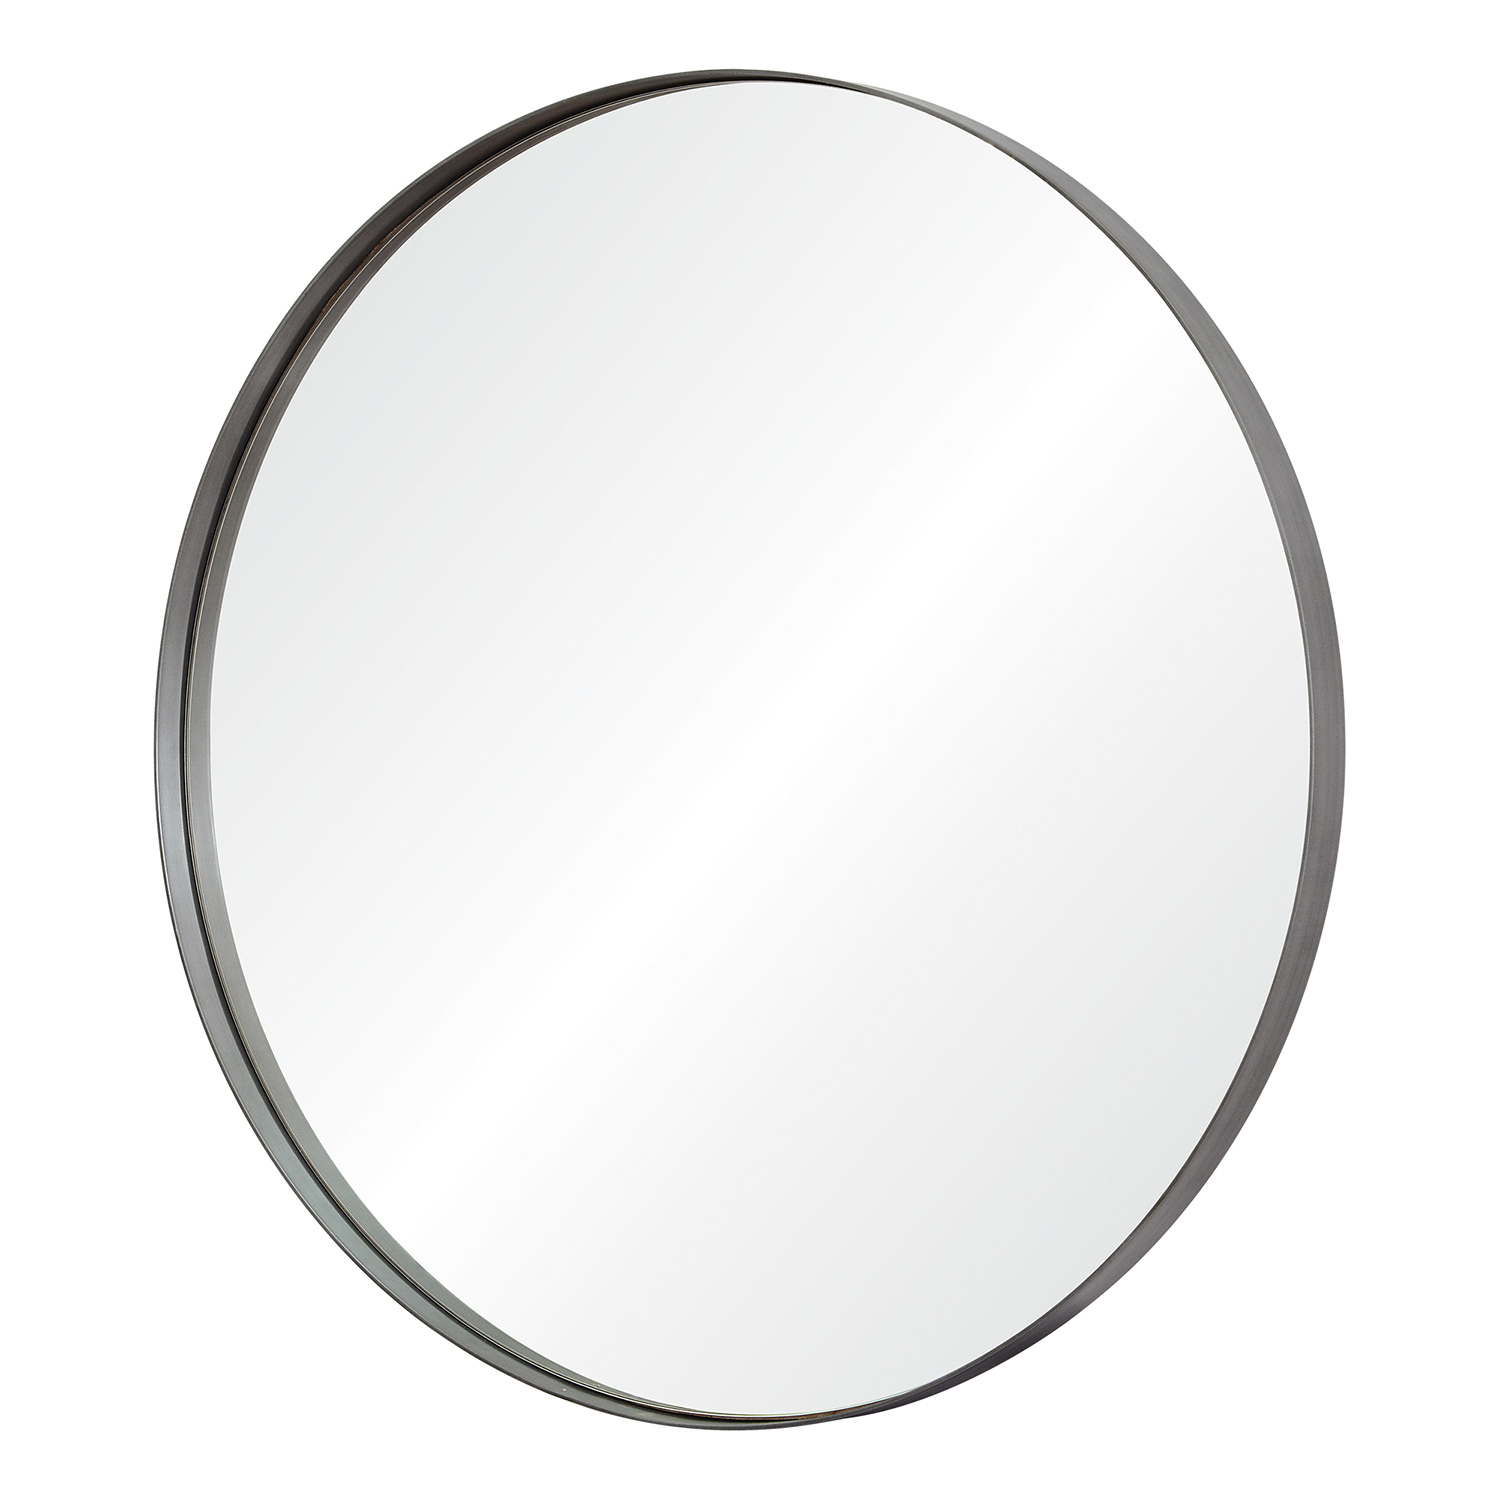 Ren-Wil Lester Round Mirror - Silver Brush